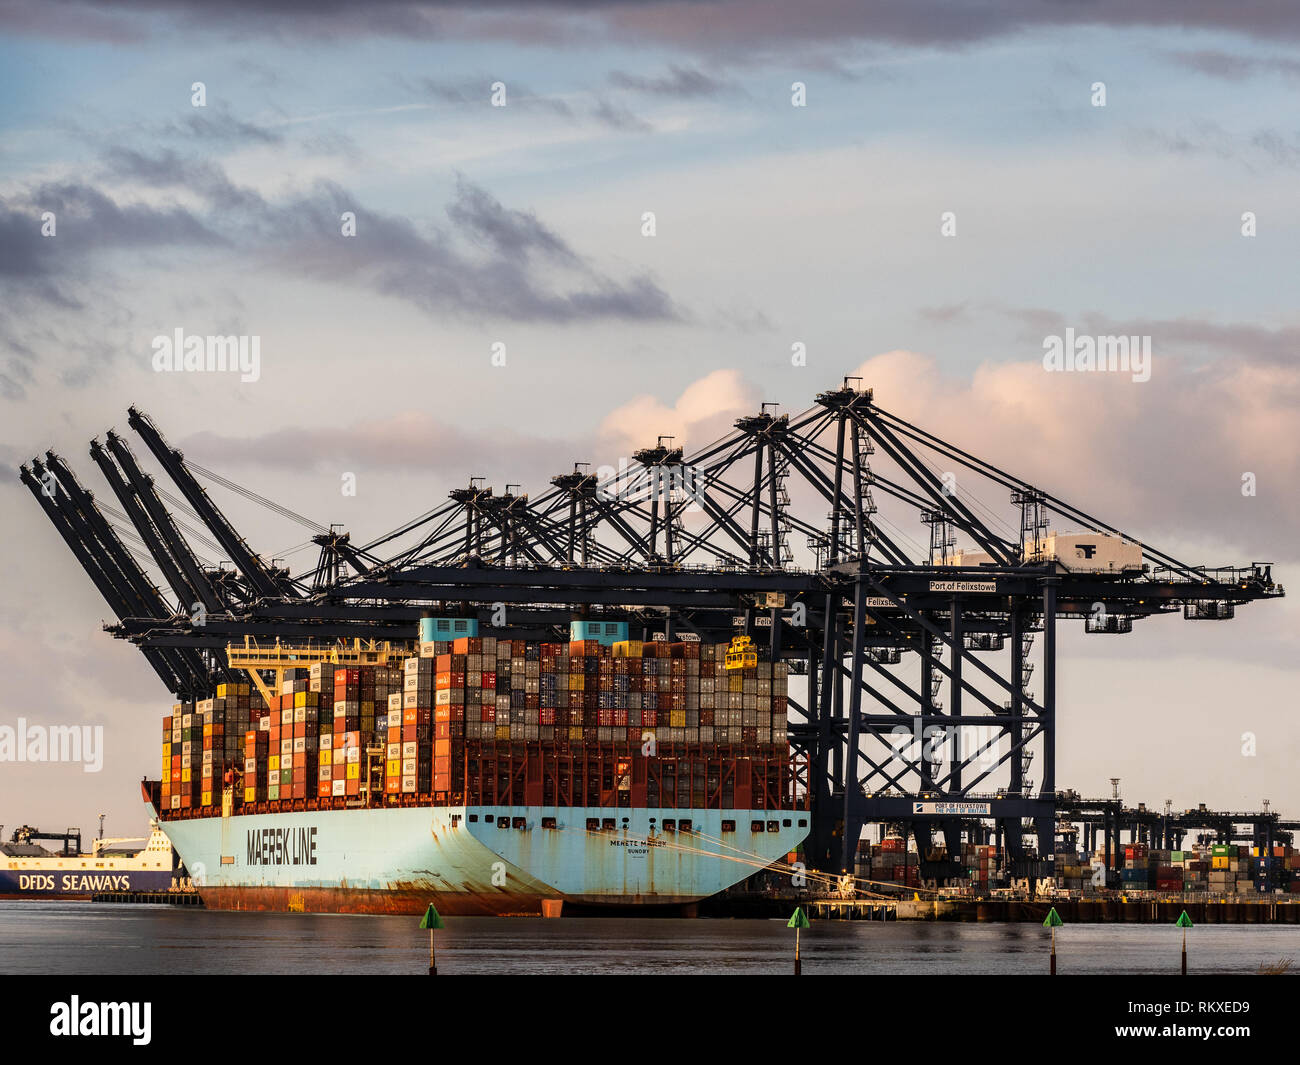 Commercio internazionale - i contenitori di spedizione vengono caricate e scaricate da una Maersk Container nave nel porto di Felixstowe UK. Foto Stock